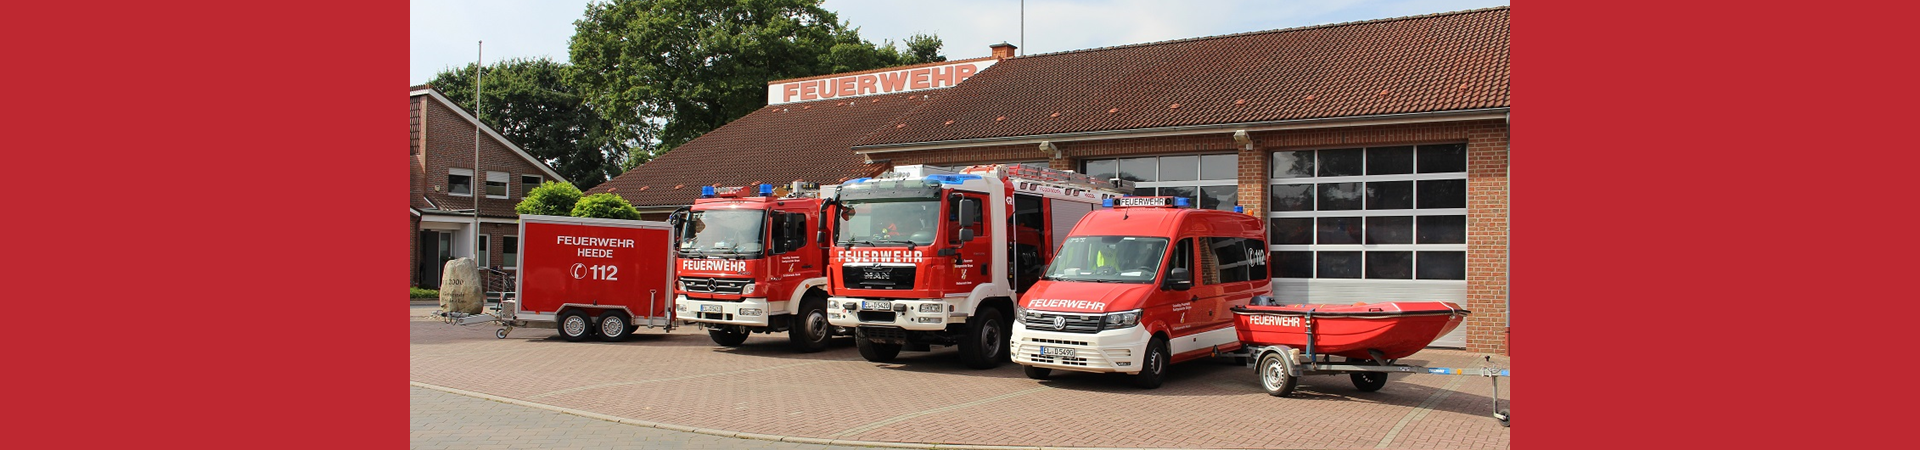 Feuerwehr Heede II